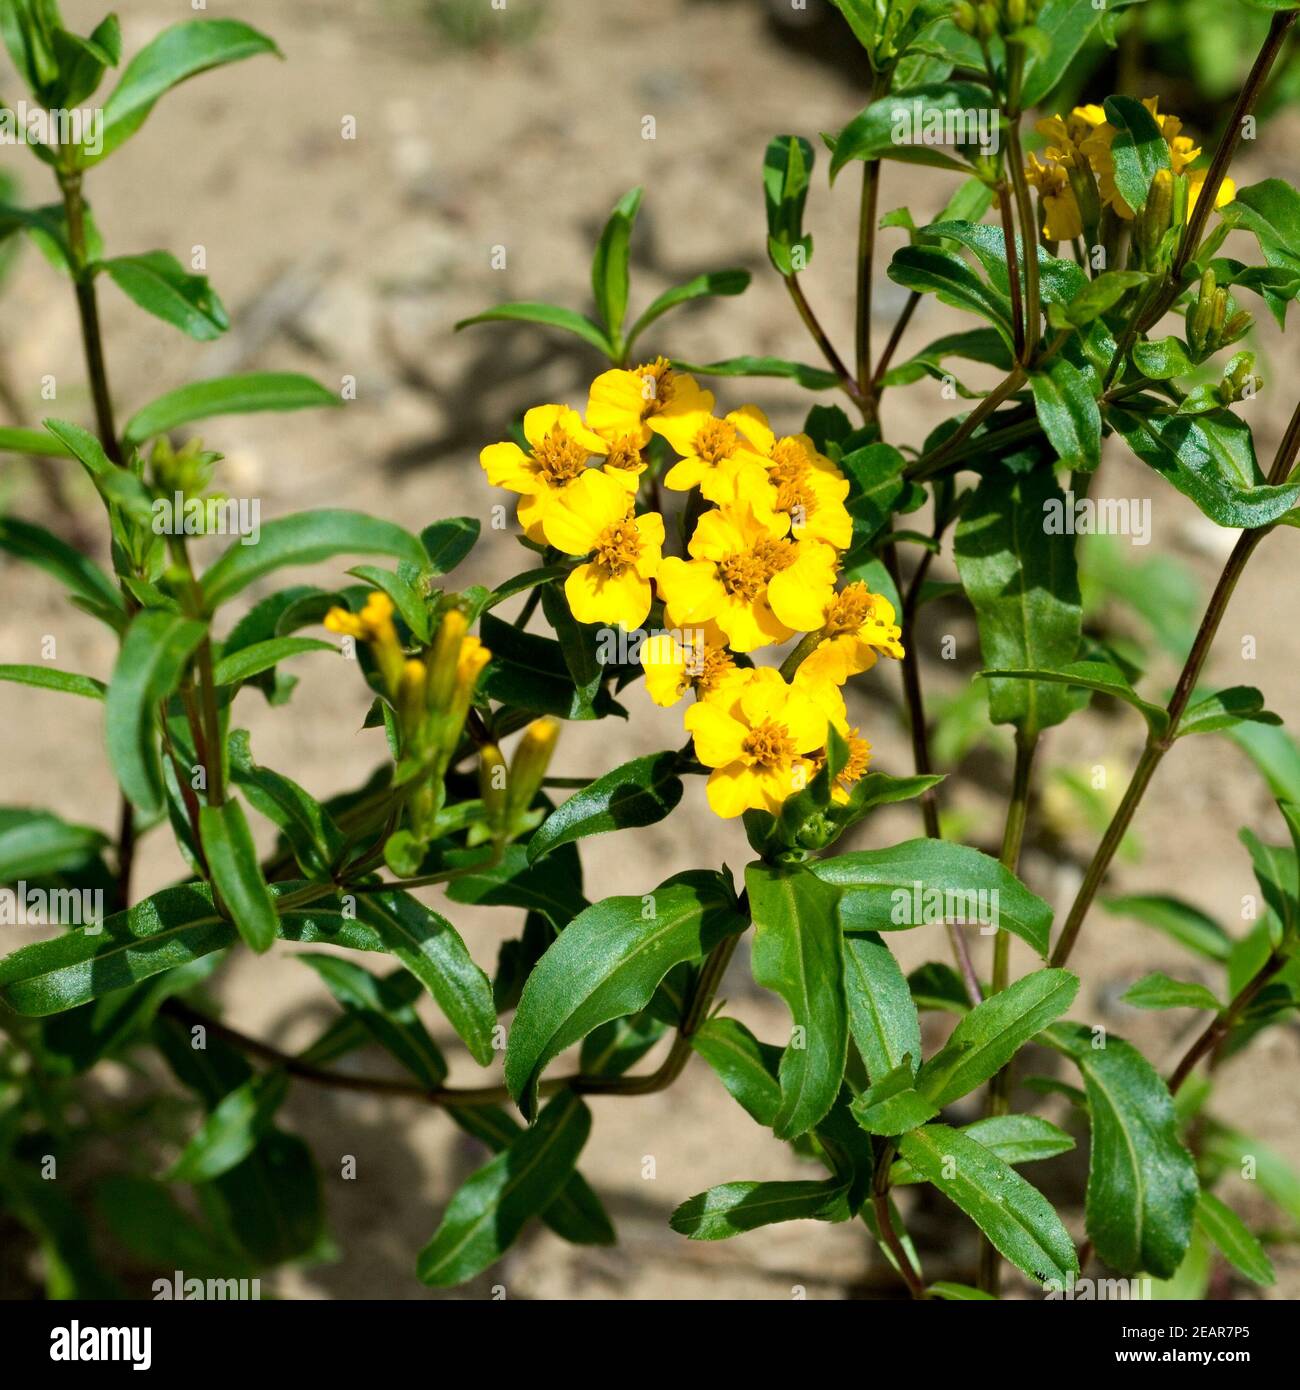 Glaenzende Studentenblume  Tagetes lucida Stock Photo